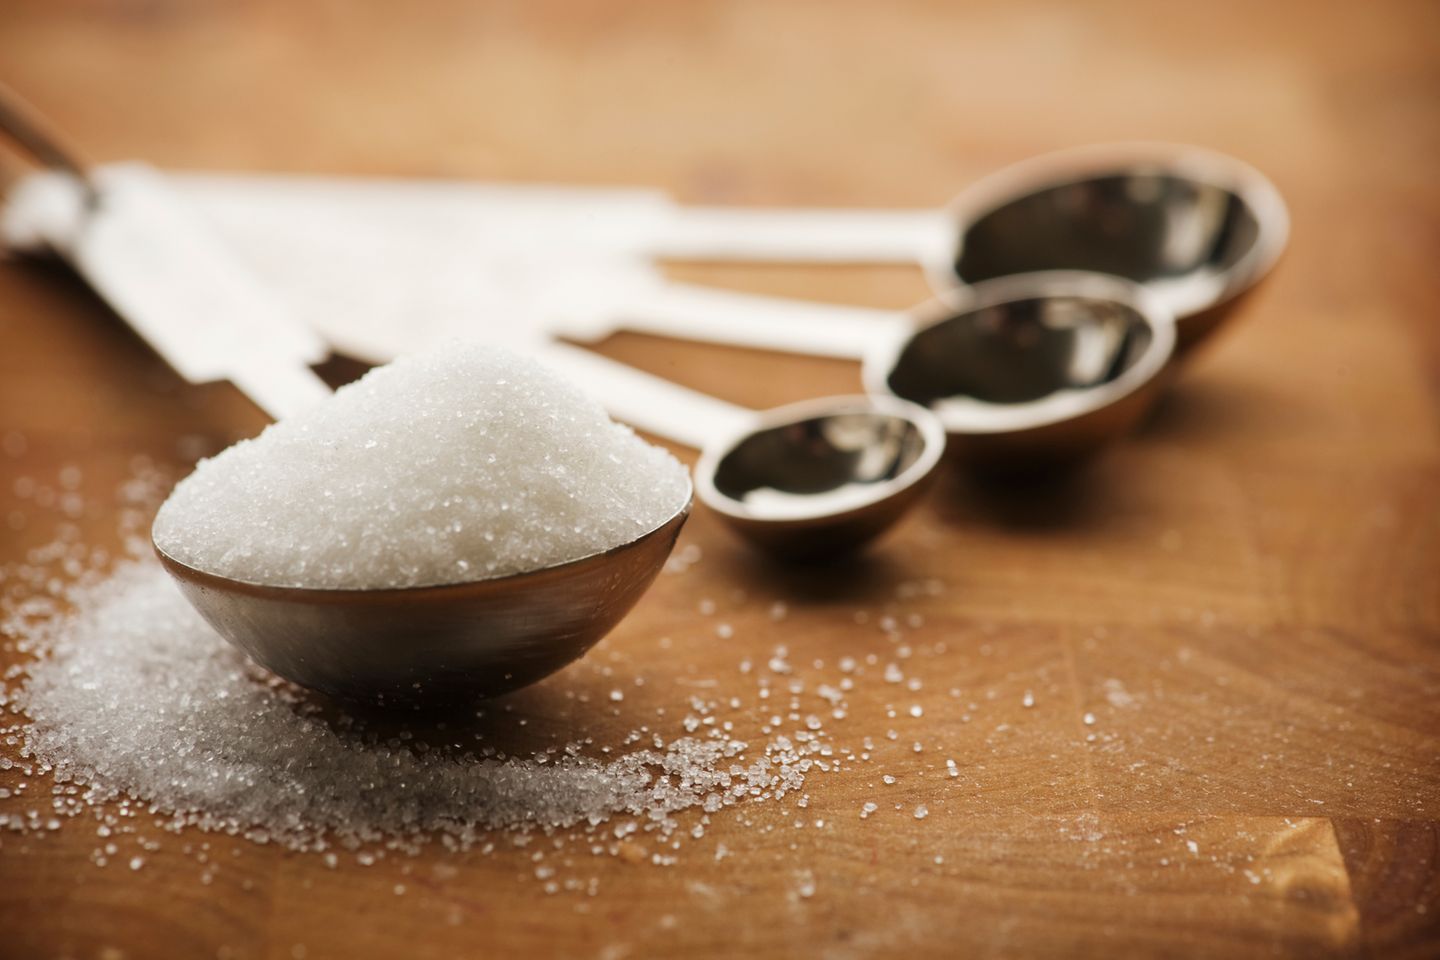 1. Zucker verursacht Karies